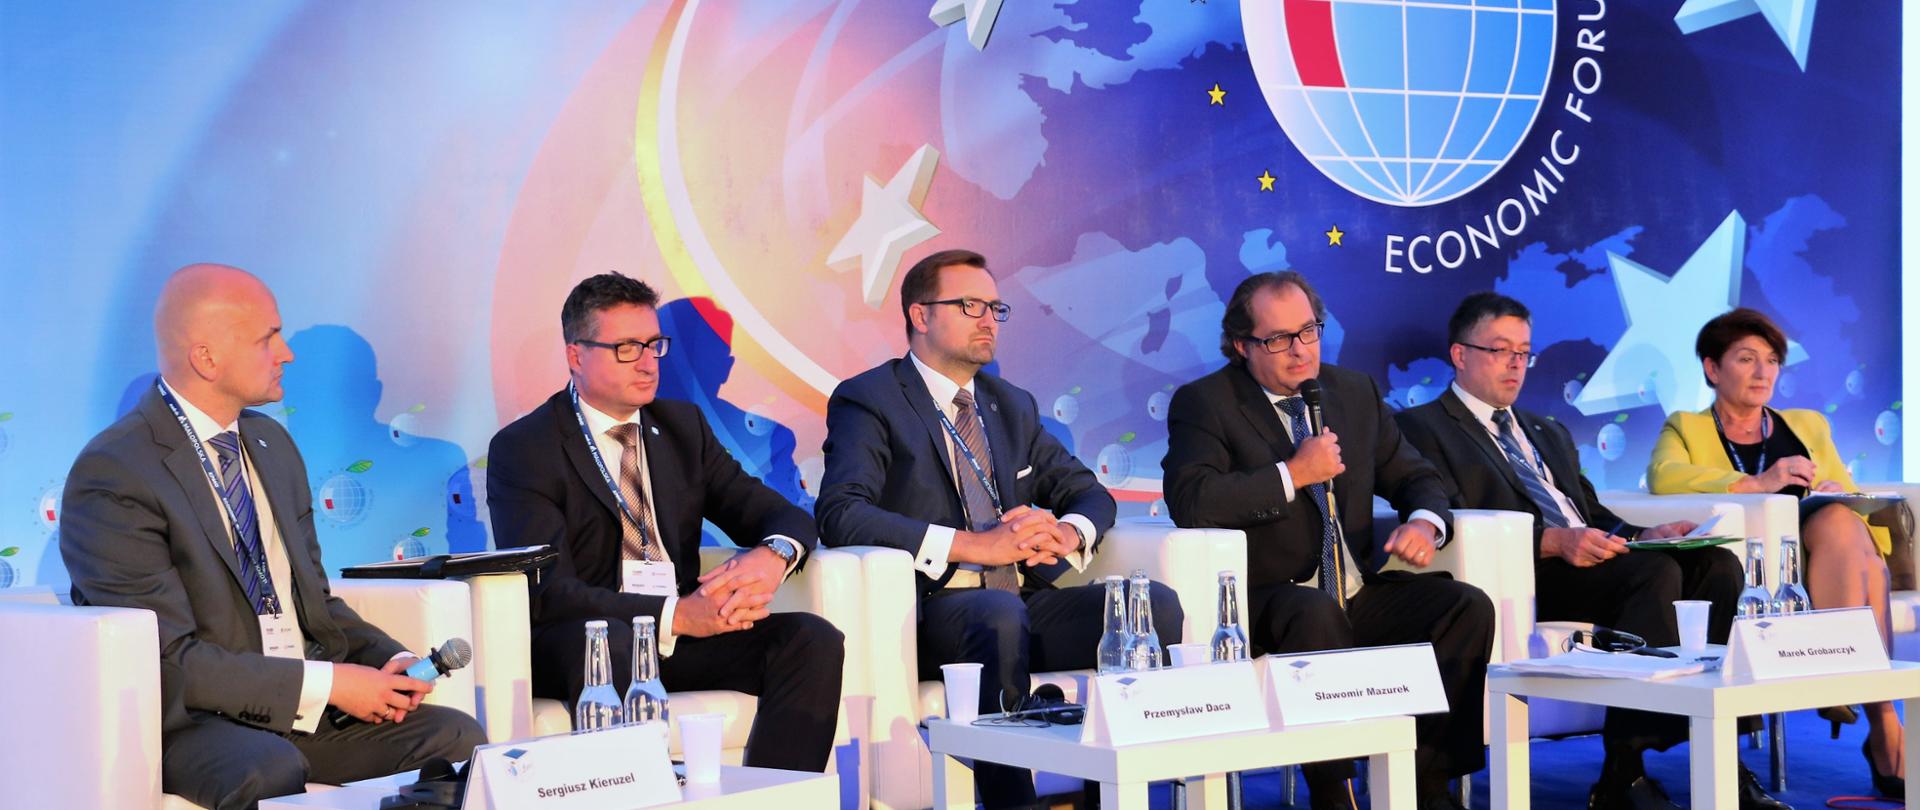 Minister Marek Gróbarczyk przemawia na jednym z paneli dyskusyjnych podczas Forum. Obok niech siedzi sześciu panelistów.